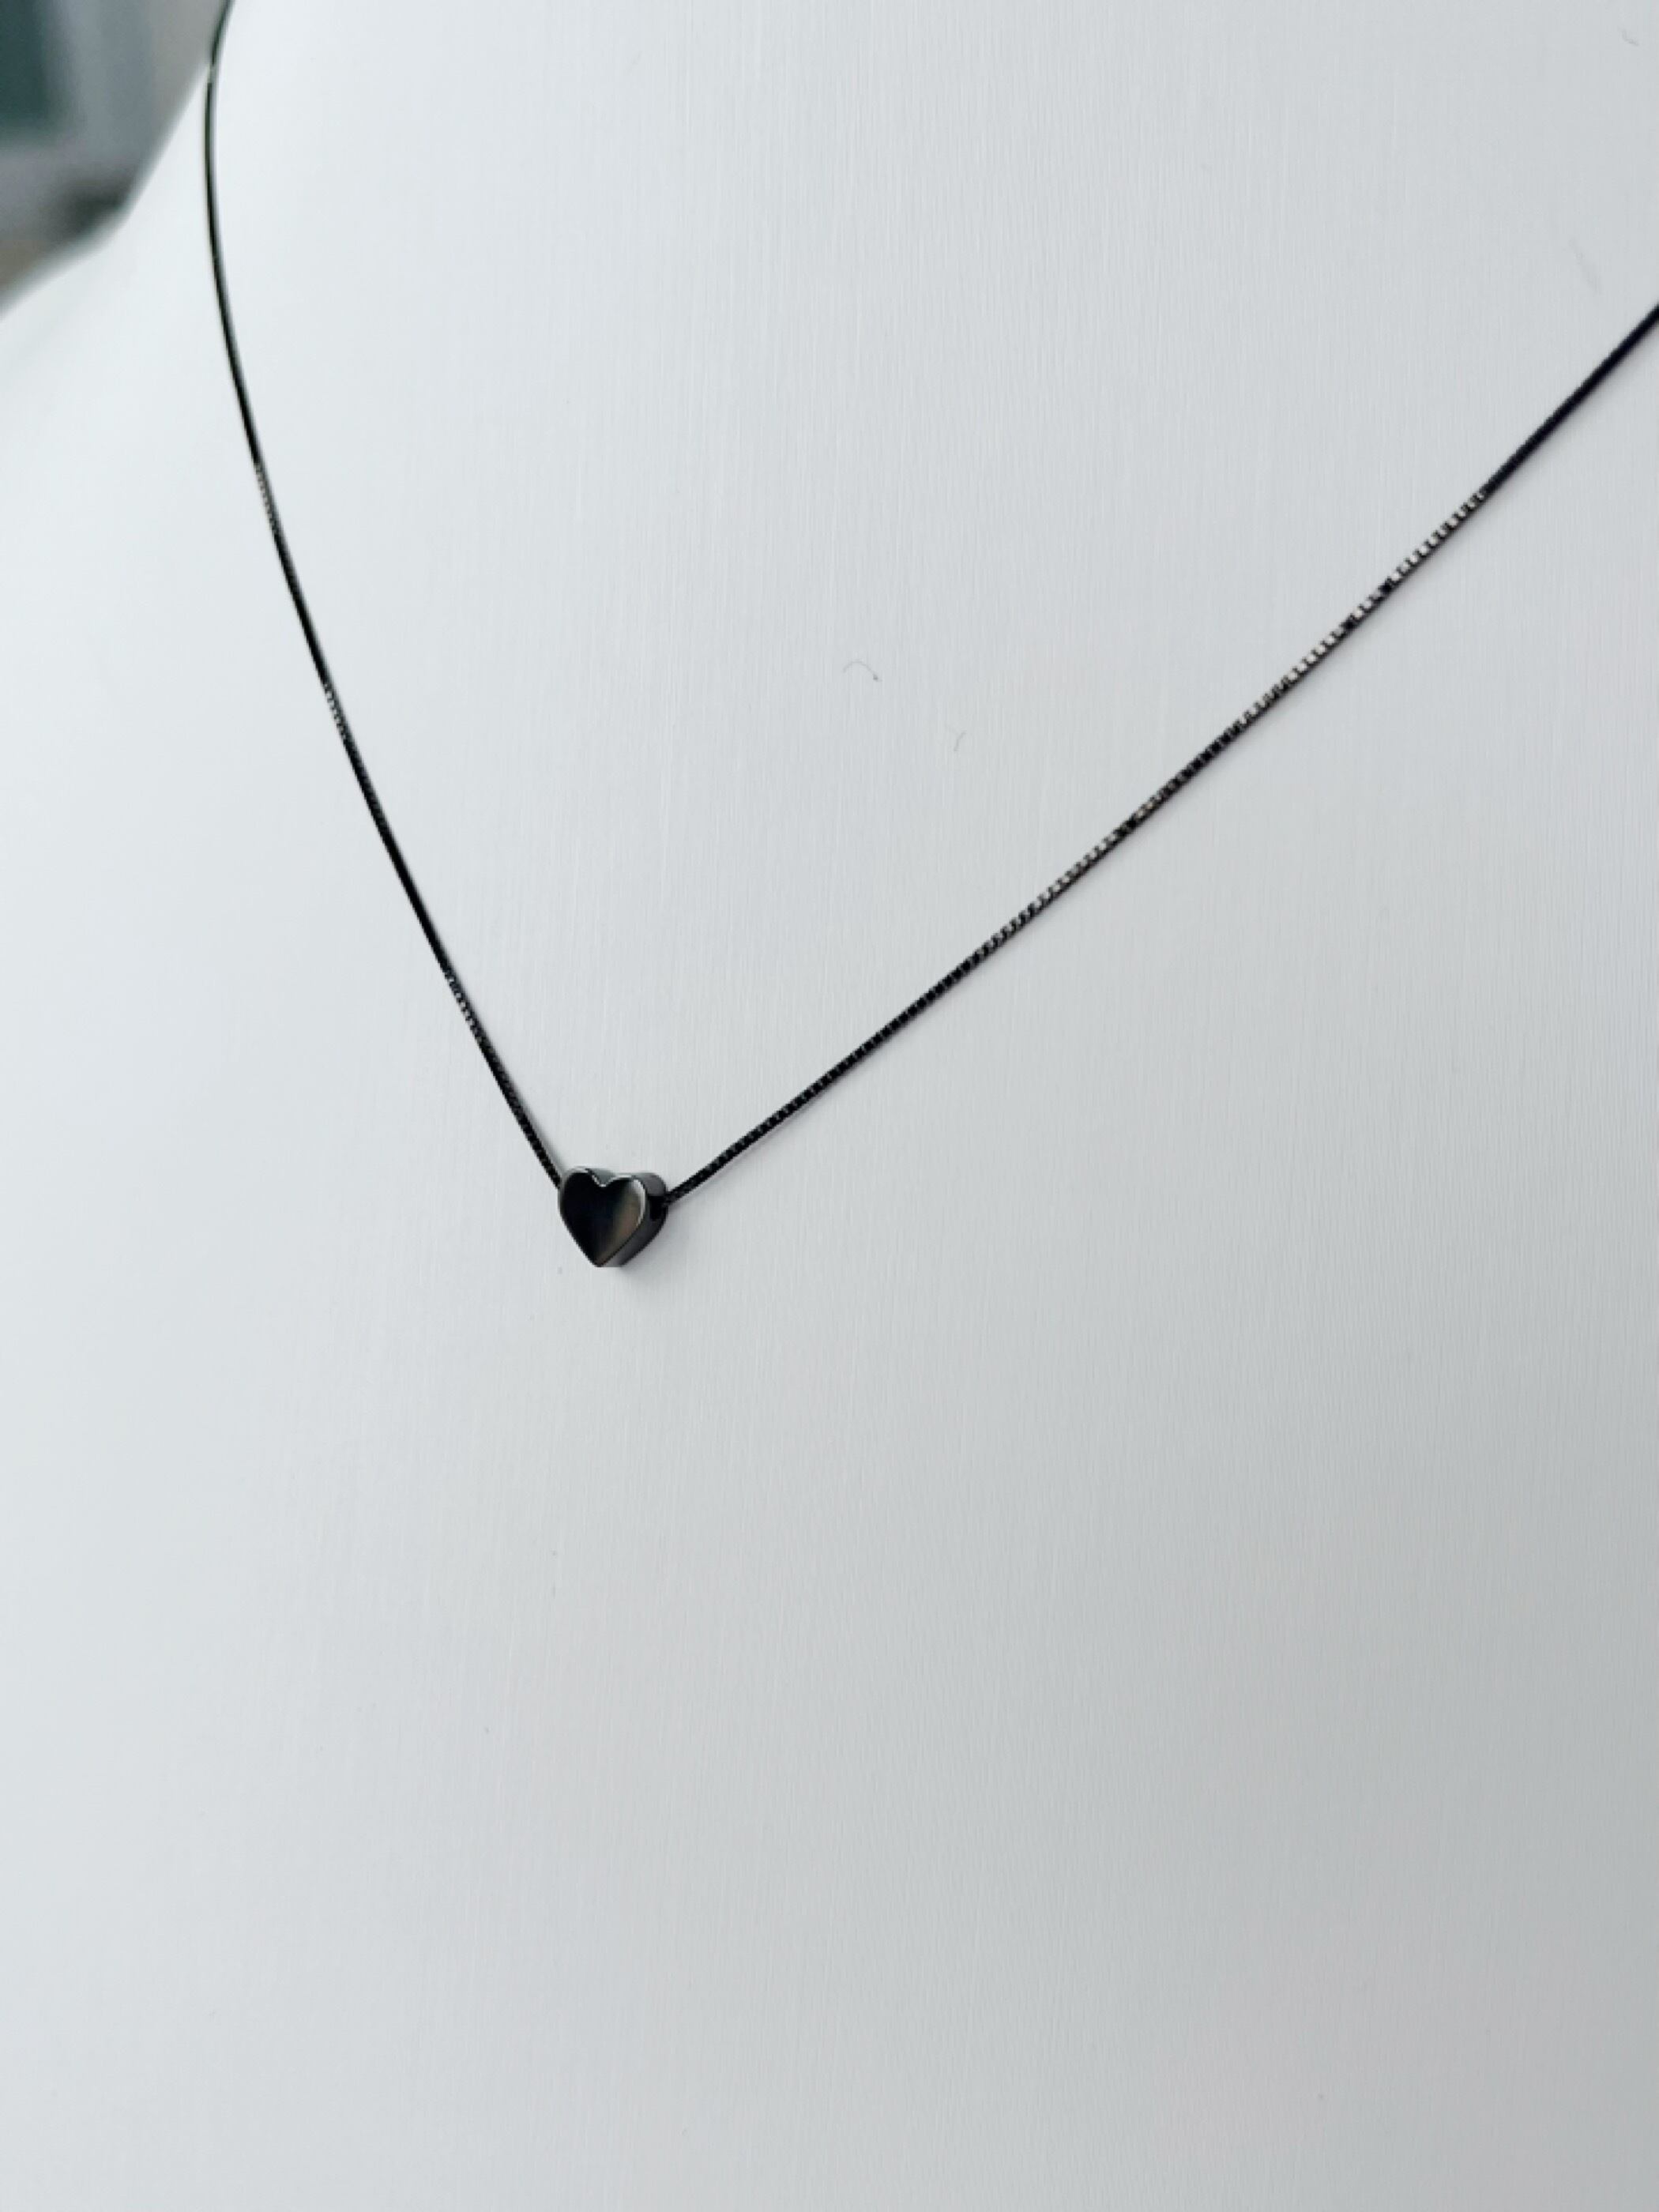 エナソルーナ 【Enasoluna】 Chic love necklace (Black) エナソルーナ ハート ネックレス モチーフ アクセサリー ジュエリー jewelry Accessory レディース シルバー925 K10YG 11962179 KOKO